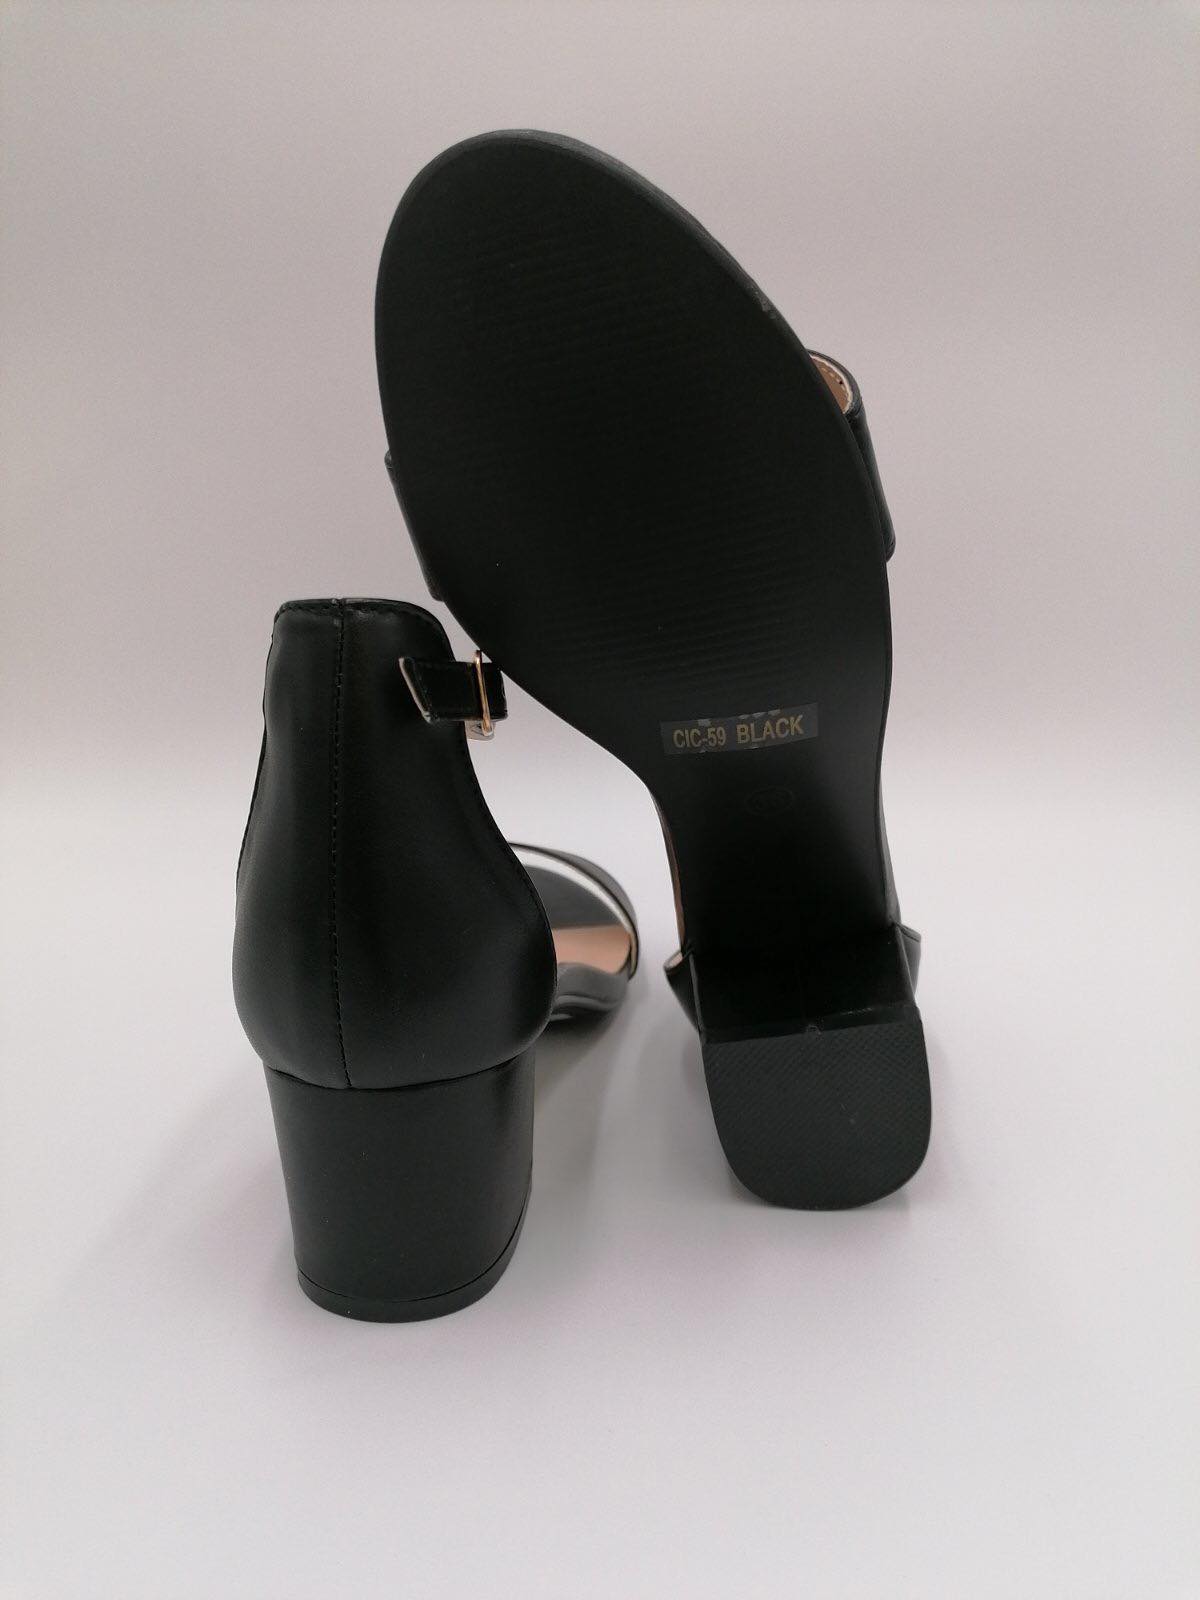 Elegant sort stilet med lav hæl